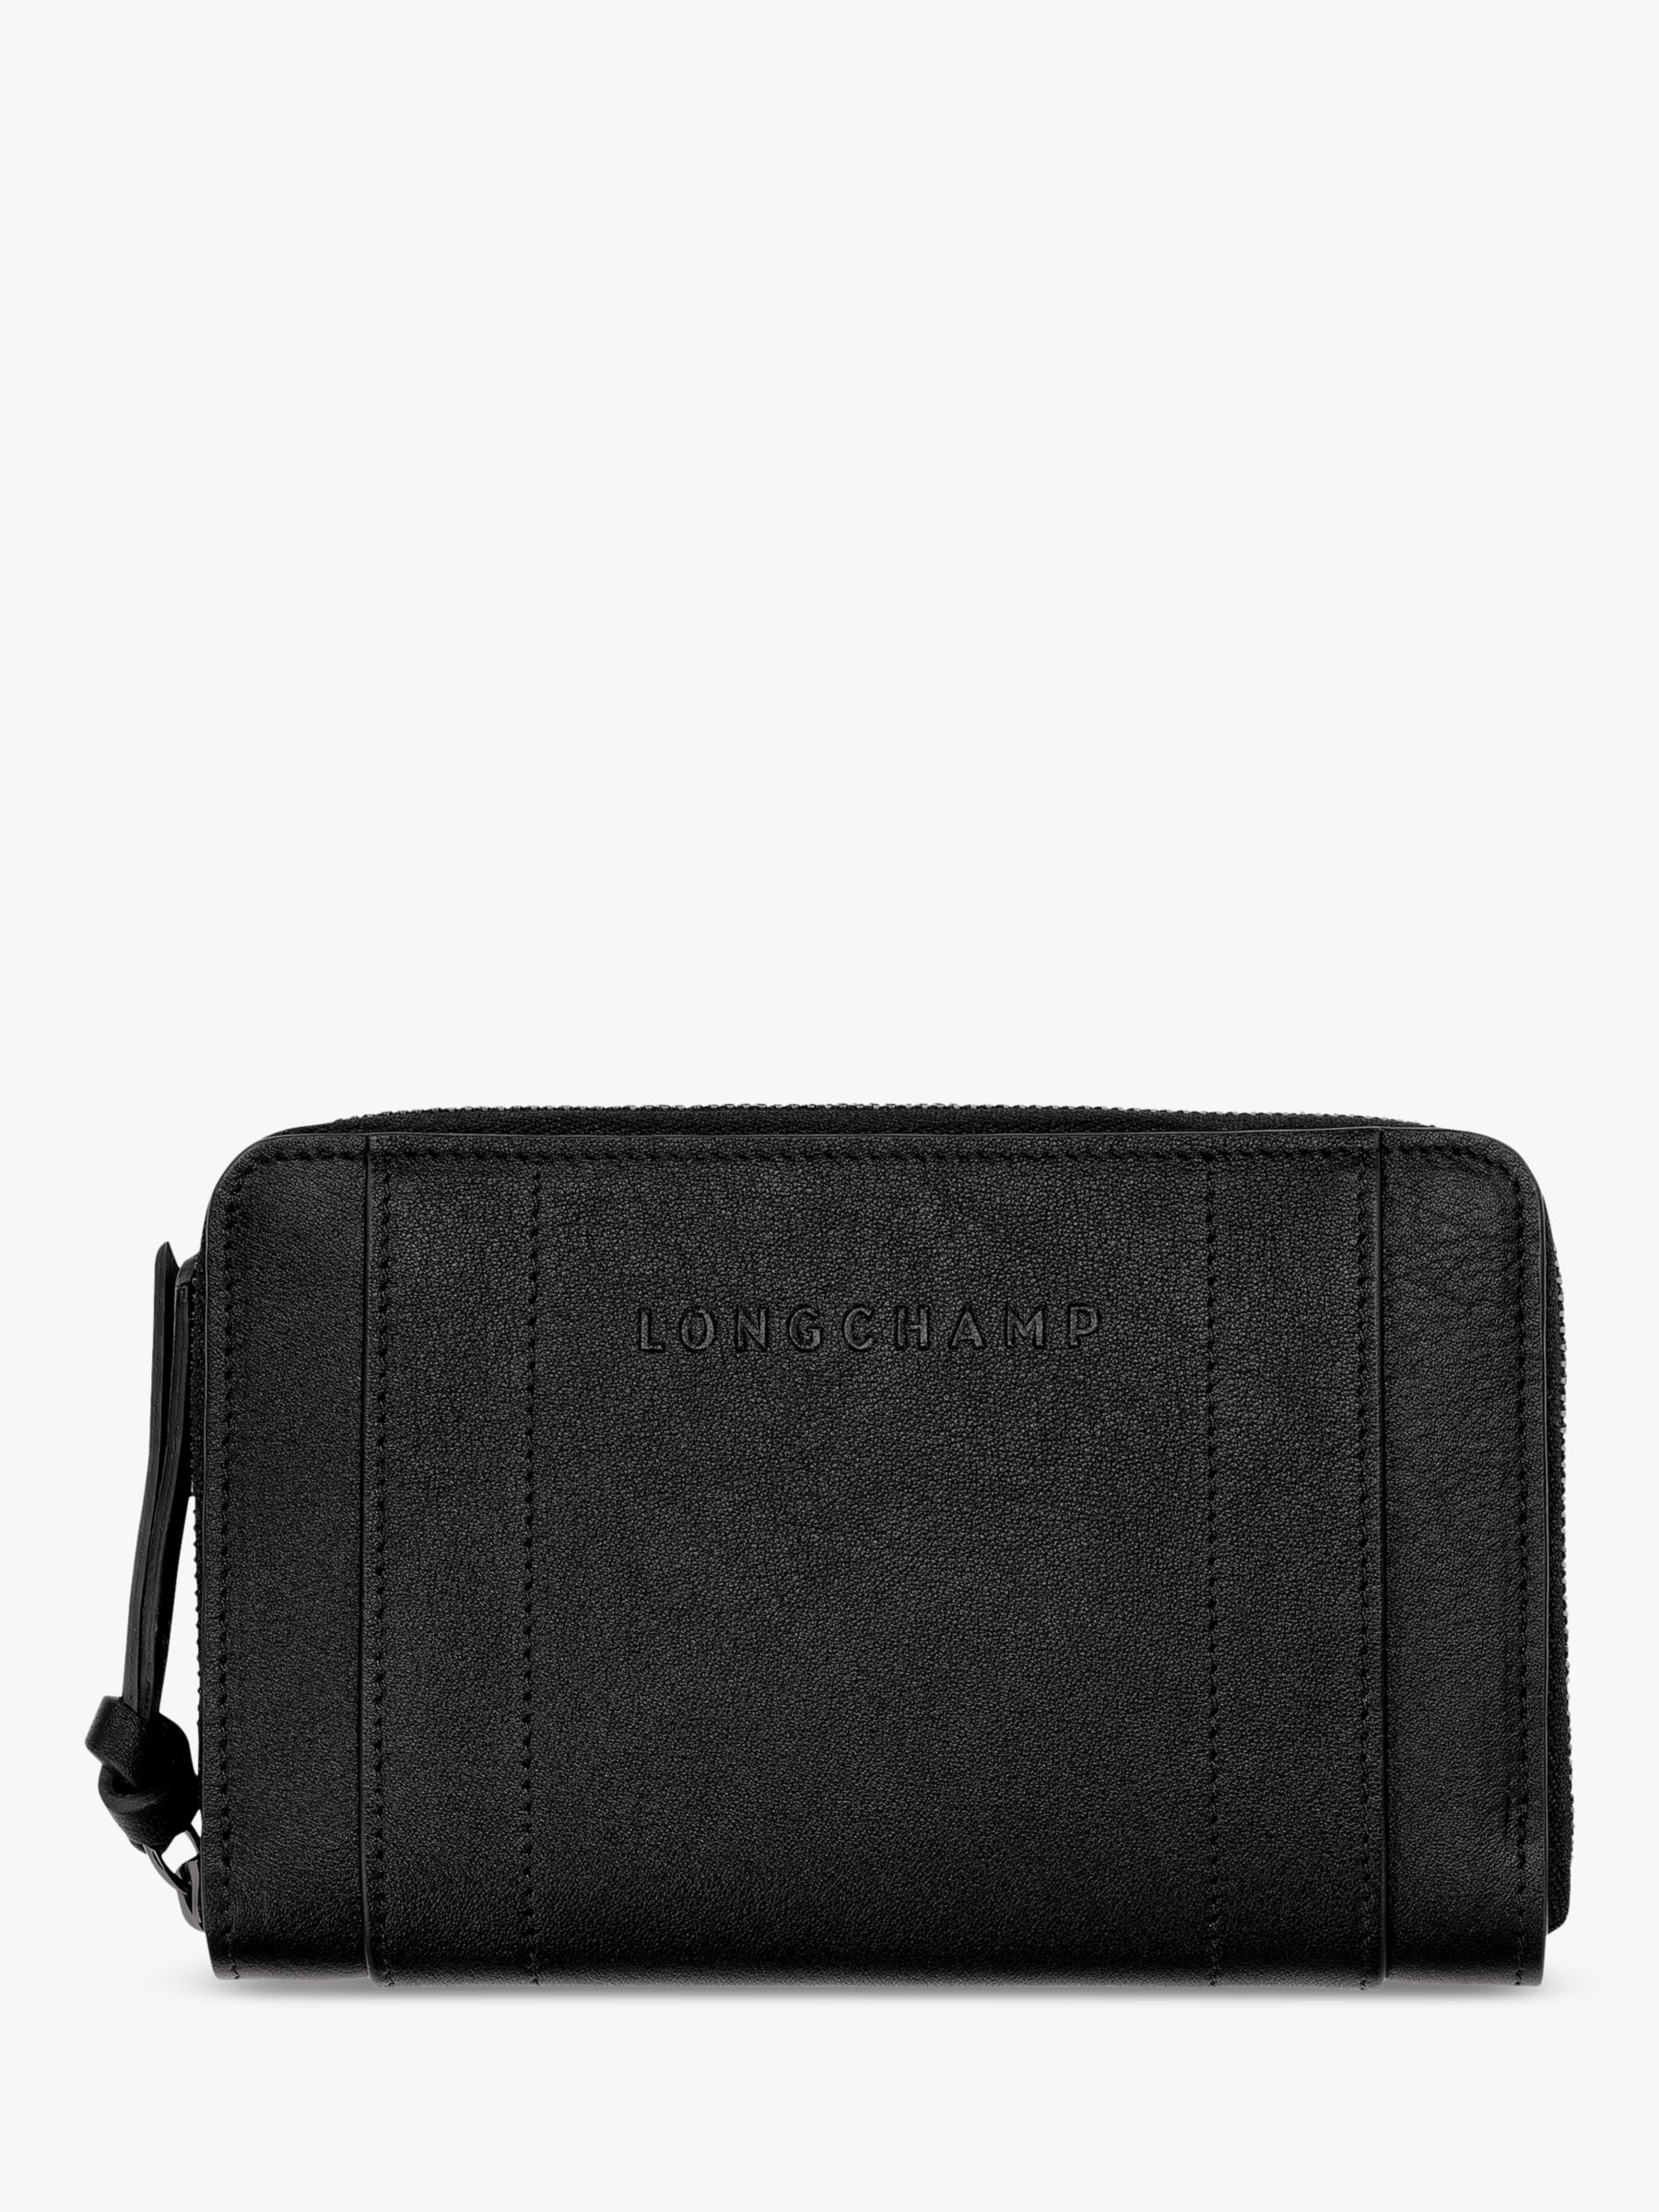 Longchamp 3D Leather Wallet